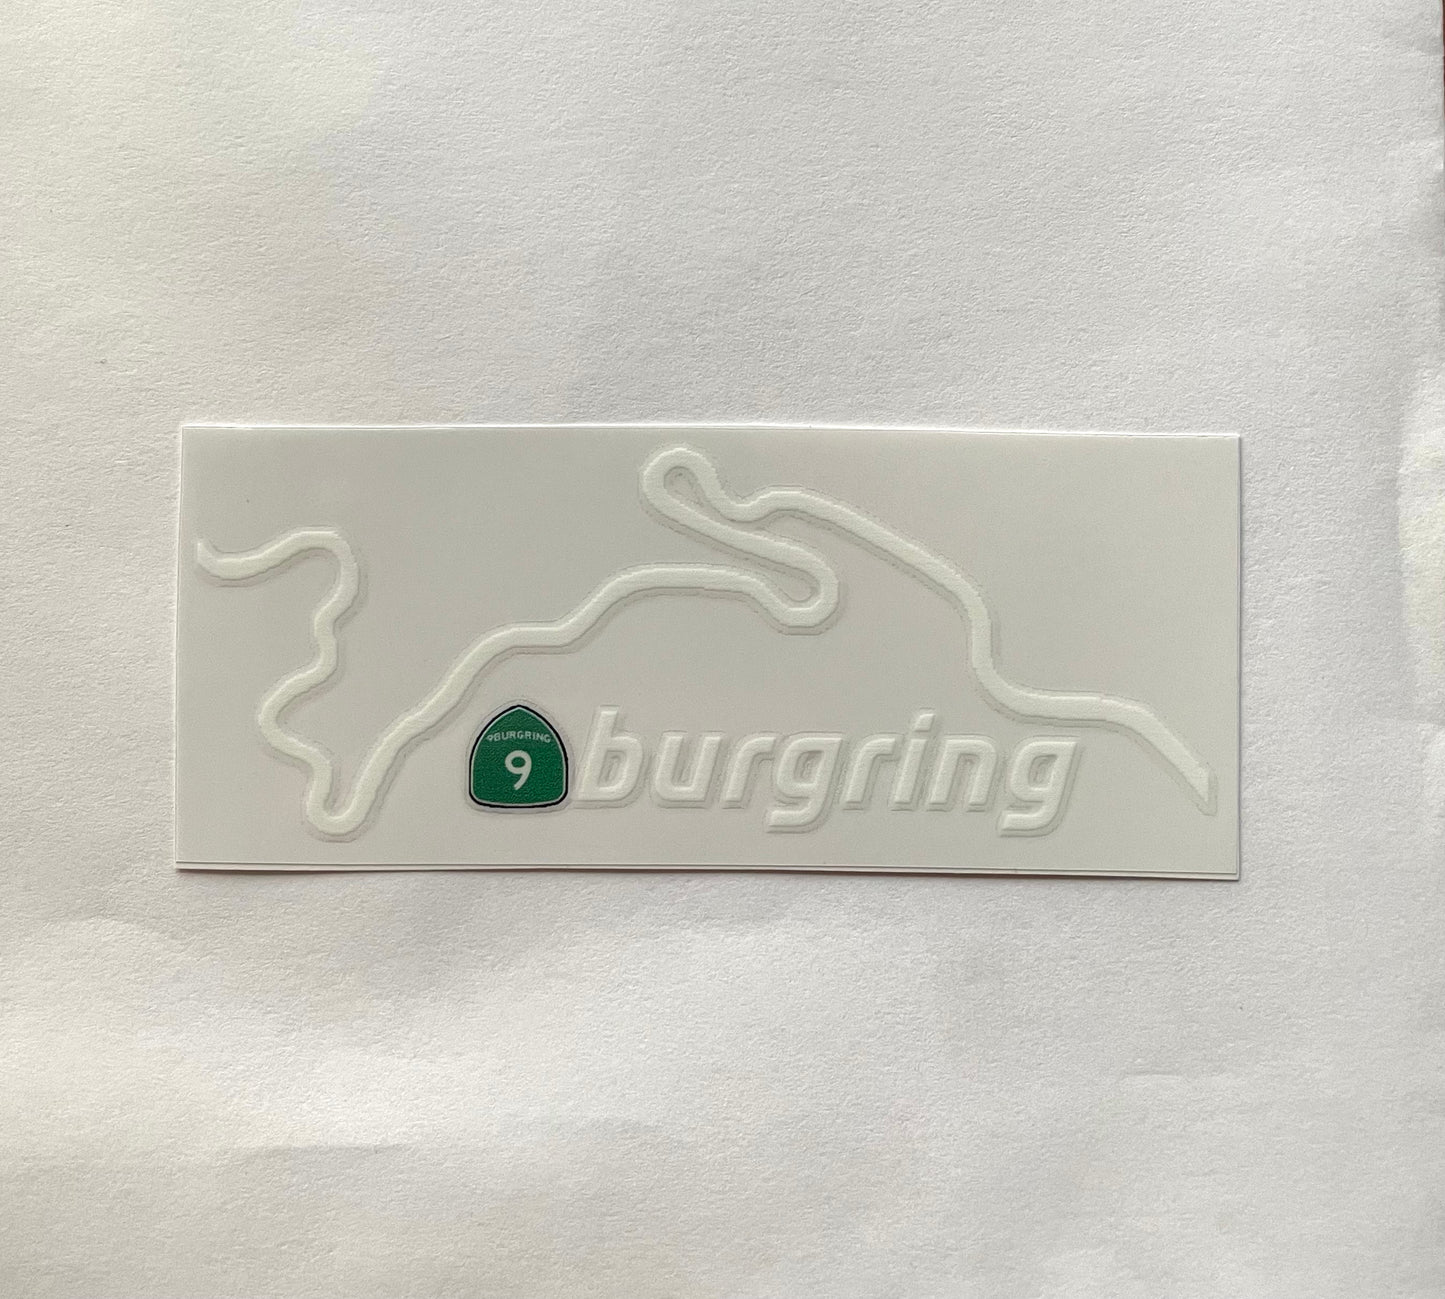 9burgring sticker V3